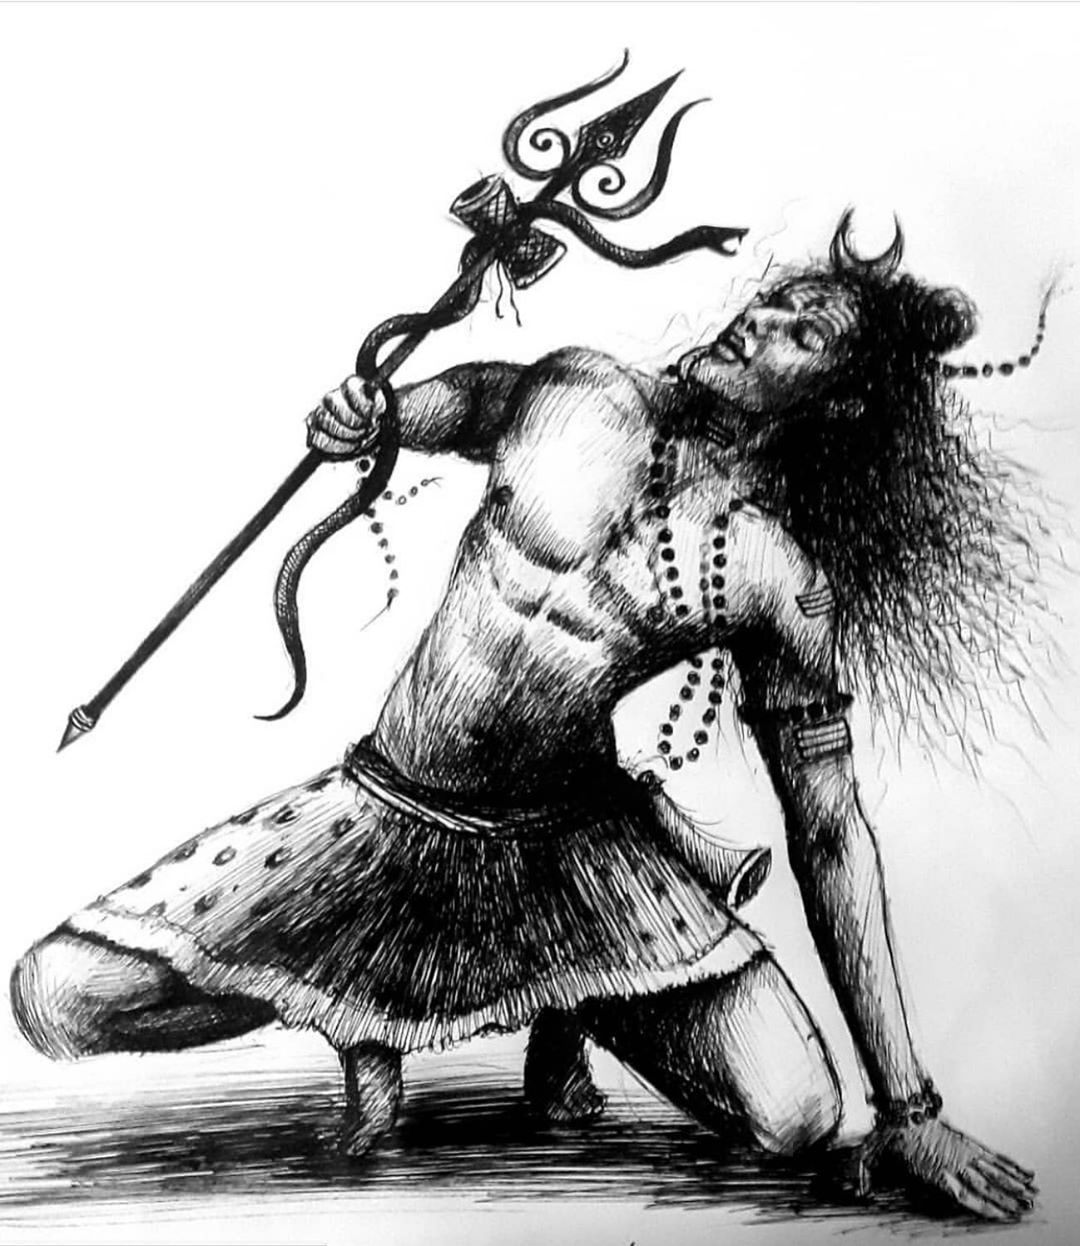 Best Lord Shiva Image. God Shiva Image 2020